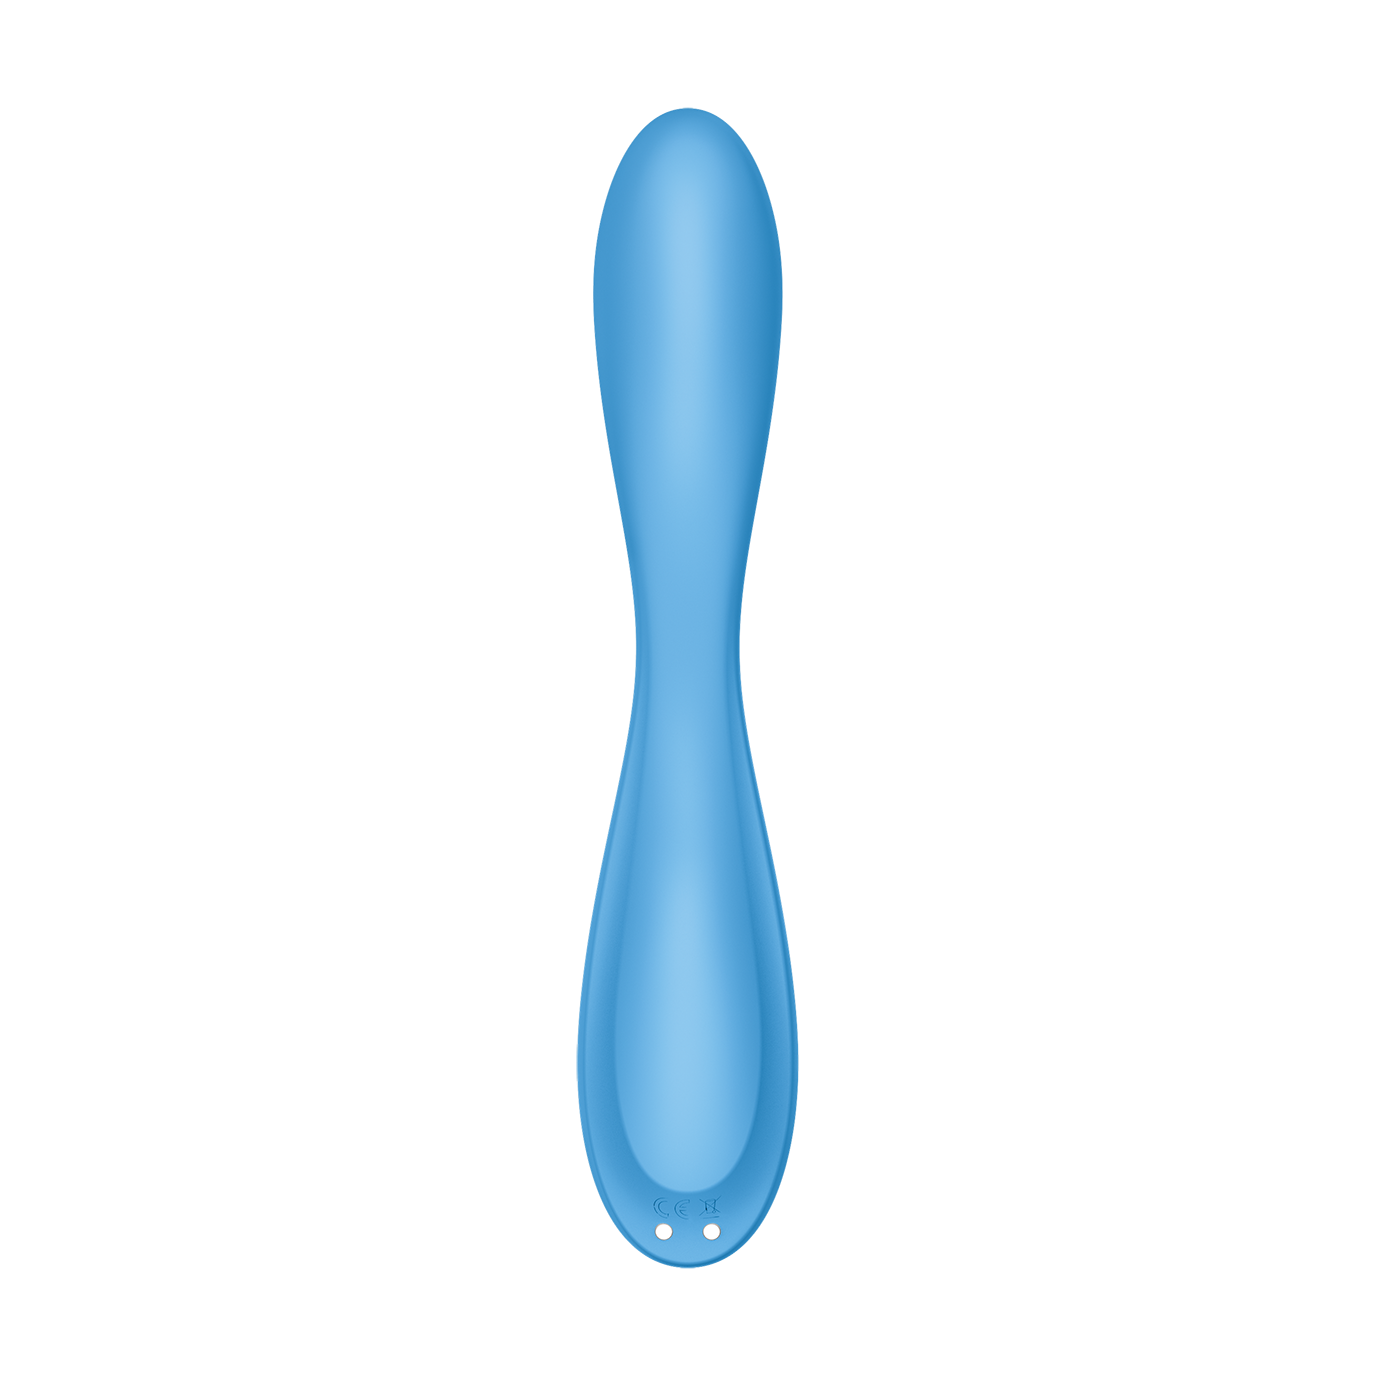 Vibrador Satisfyer G-Spot Flex 4 con un fondo azul claro que complementa su color, destacando su diseño simple pero sofisticado y sus controles intuitivos.